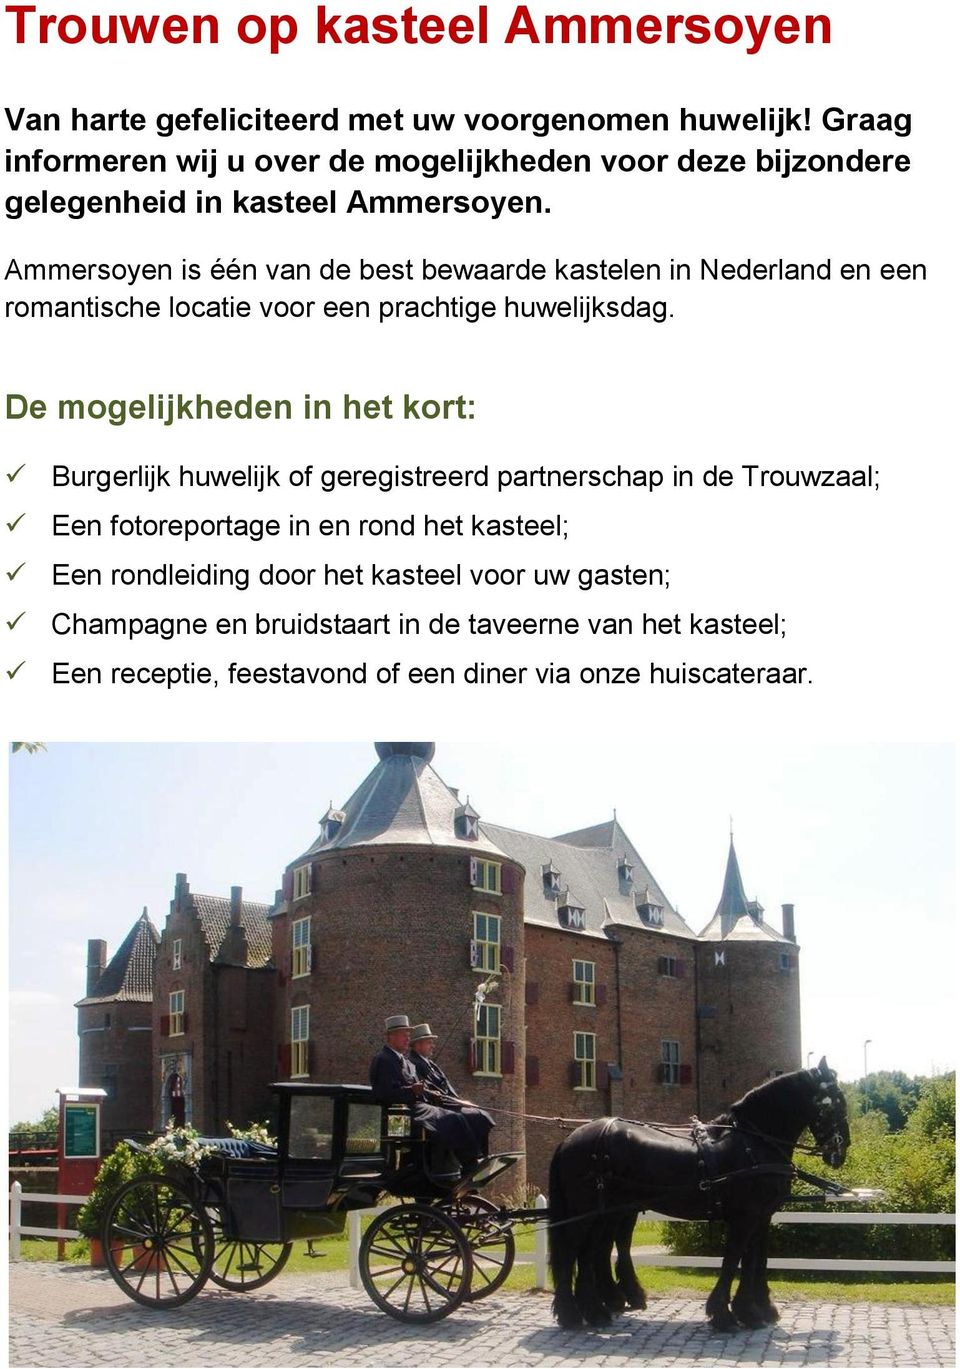 Ammersoyen is één van de best bewaarde kastelen in Nederland en een romantische locatie voor een prachtige huwelijksdag.